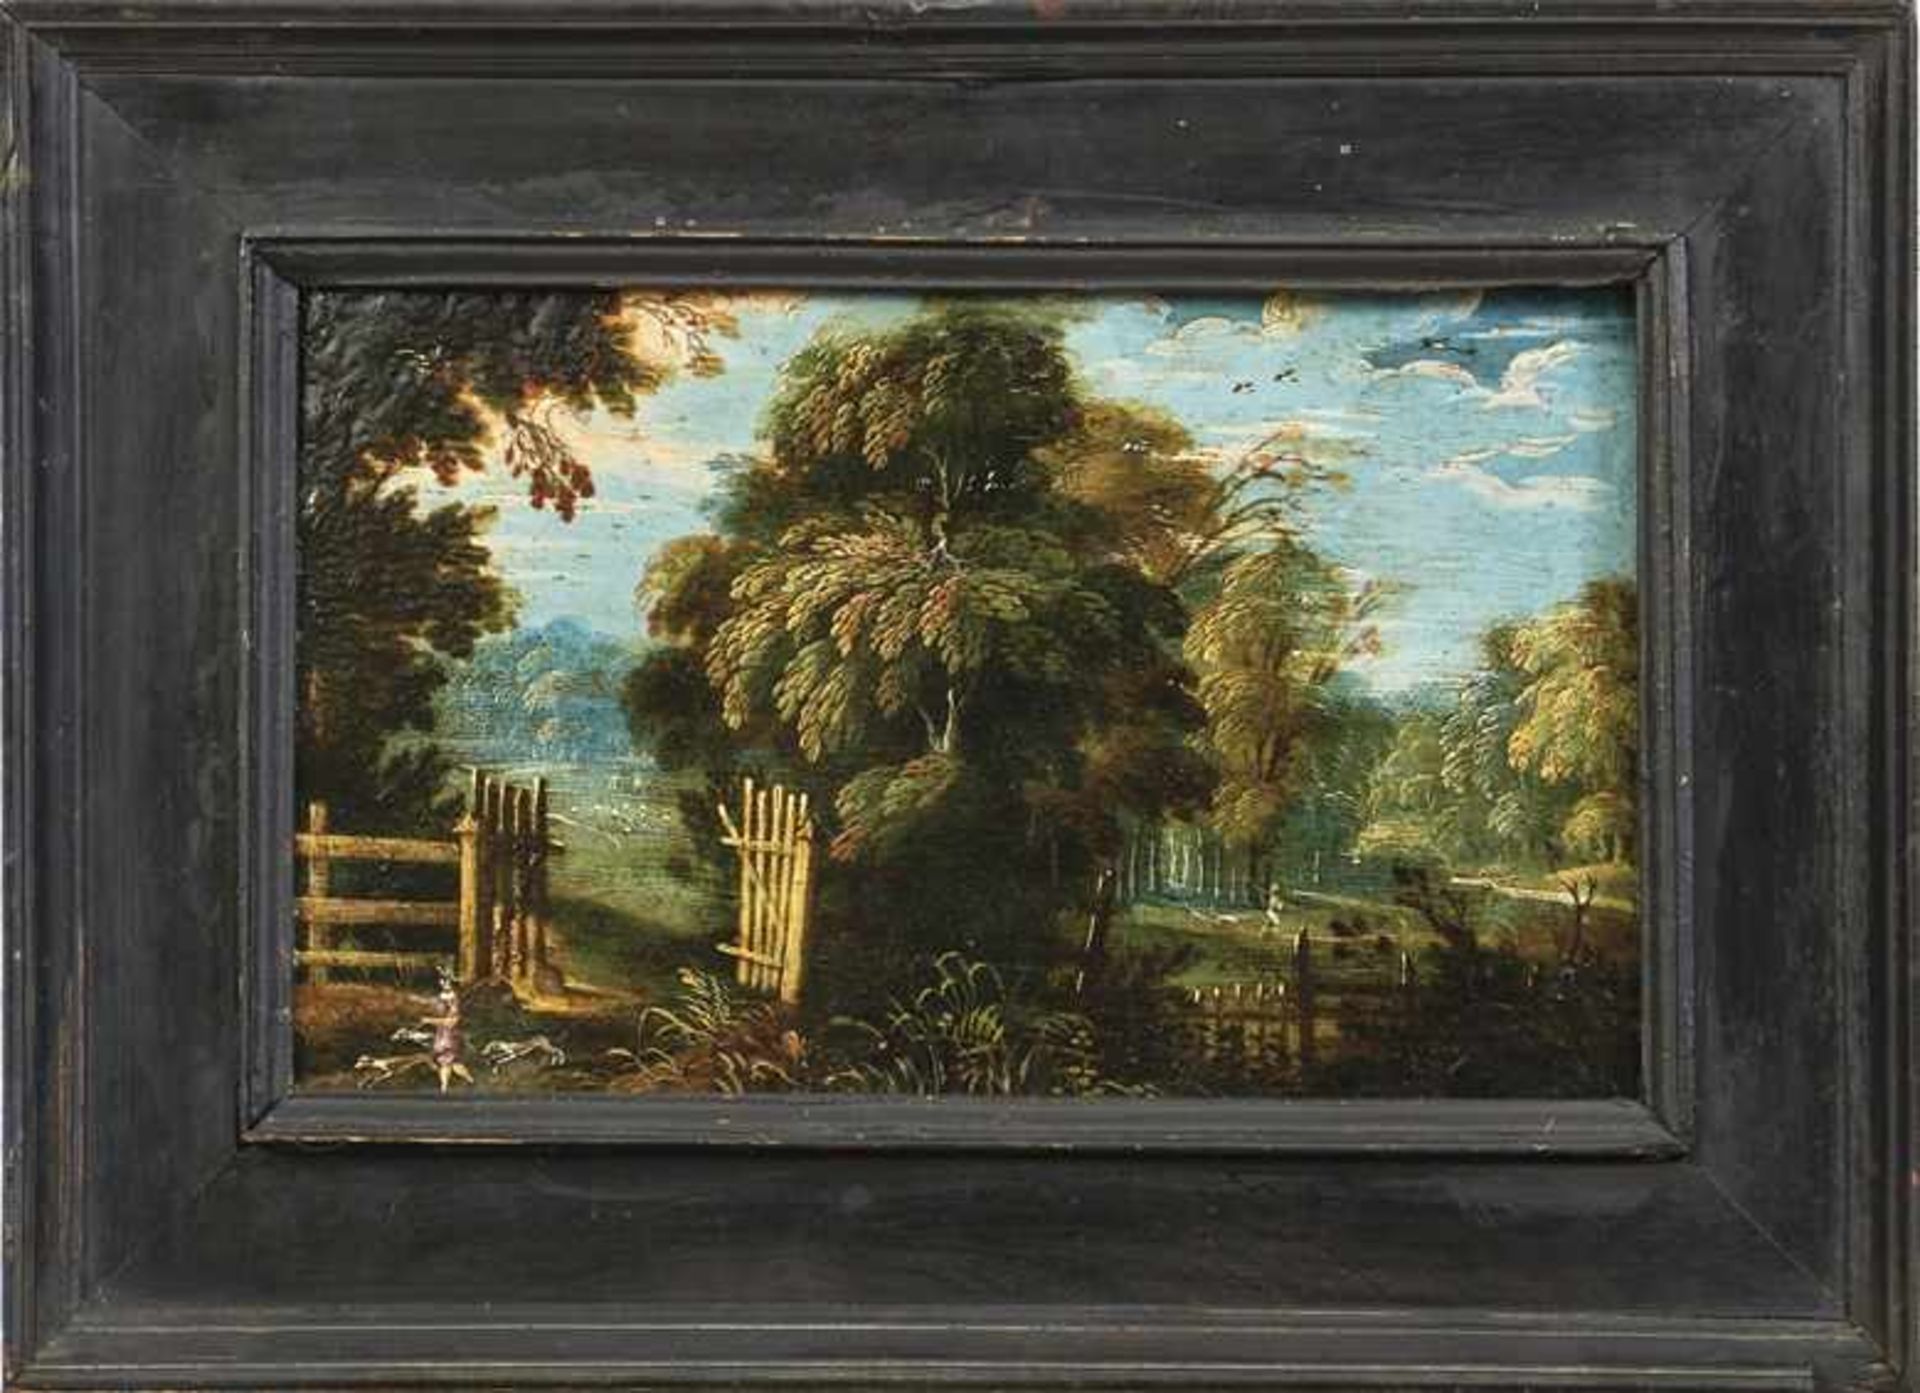 Zwei kleine Landschaftsbilder Niederlande, 17. Jh. Öl/Kupfer. Verso Sammlungsnummern "186" bzw. "